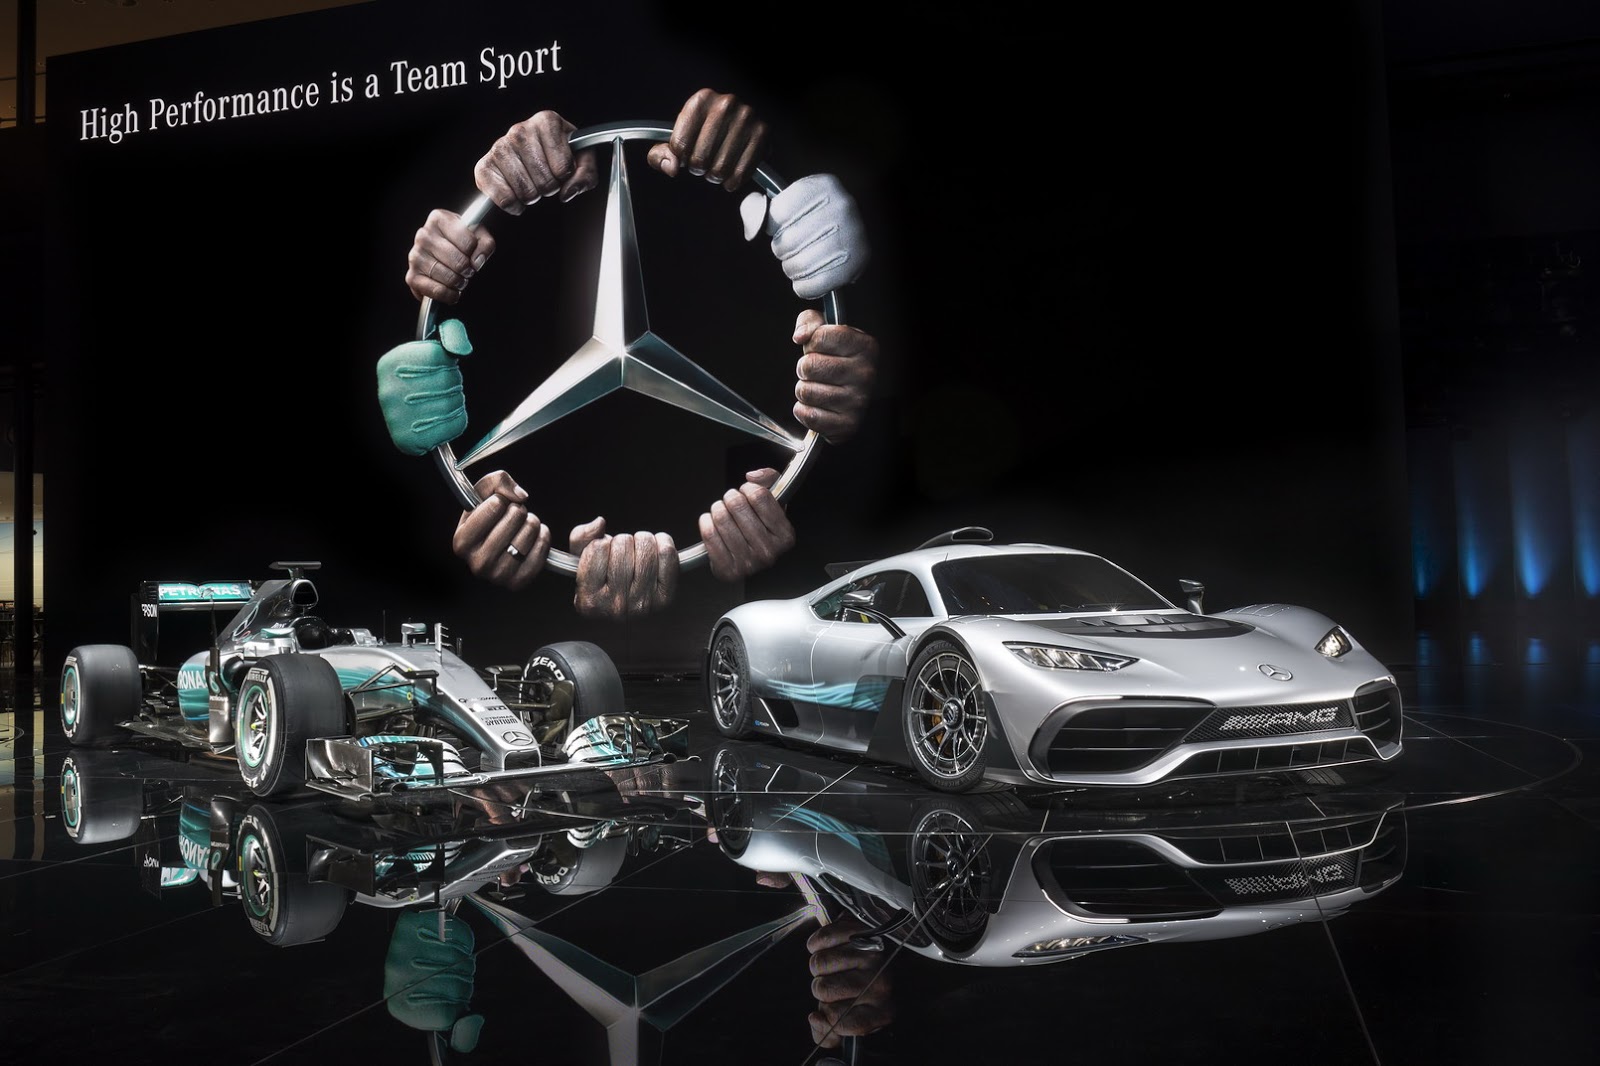 Mercedes-AMG là biểu tượng của sự mạnh mẽ và đẳng cấp trong thế giới xe hơi. Hãy xem những hình ảnh Mercedes-AMG để cảm nhận toàn bộ sự thăng hoa của khả năng vận hành và sự tinh tế trong thiết kế.